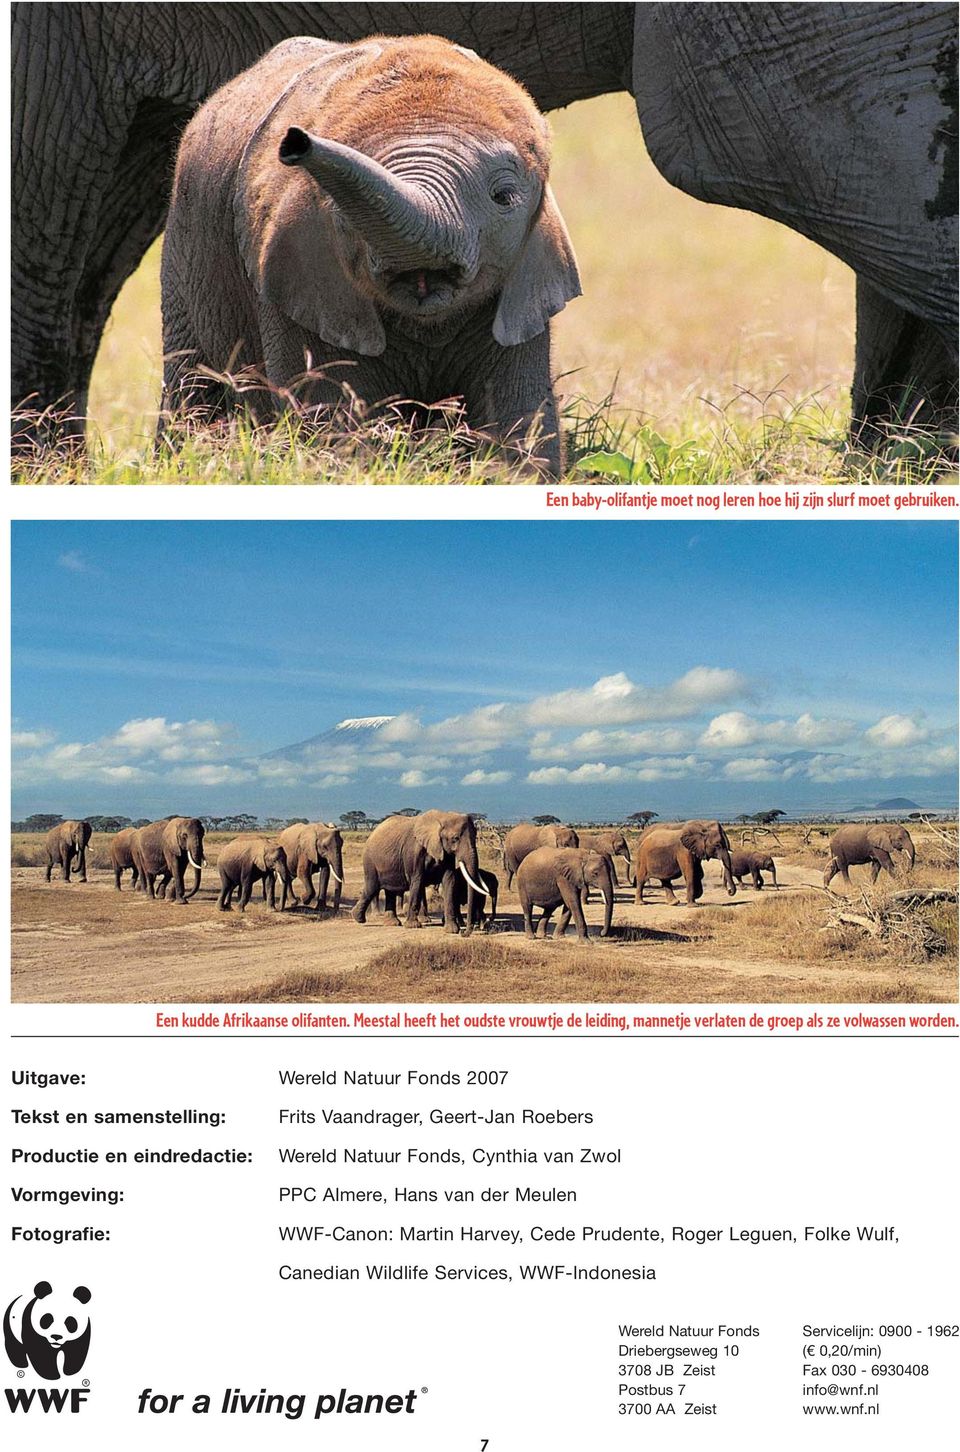 Uitgave: Wereld Natuur Fonds 2007 Tekst en samenstelling: Productie en eindredactie: Vormgeving: Fotografie: Frits Vaandrager, Geert-Jan Roebers Wereld Natuur Fonds,